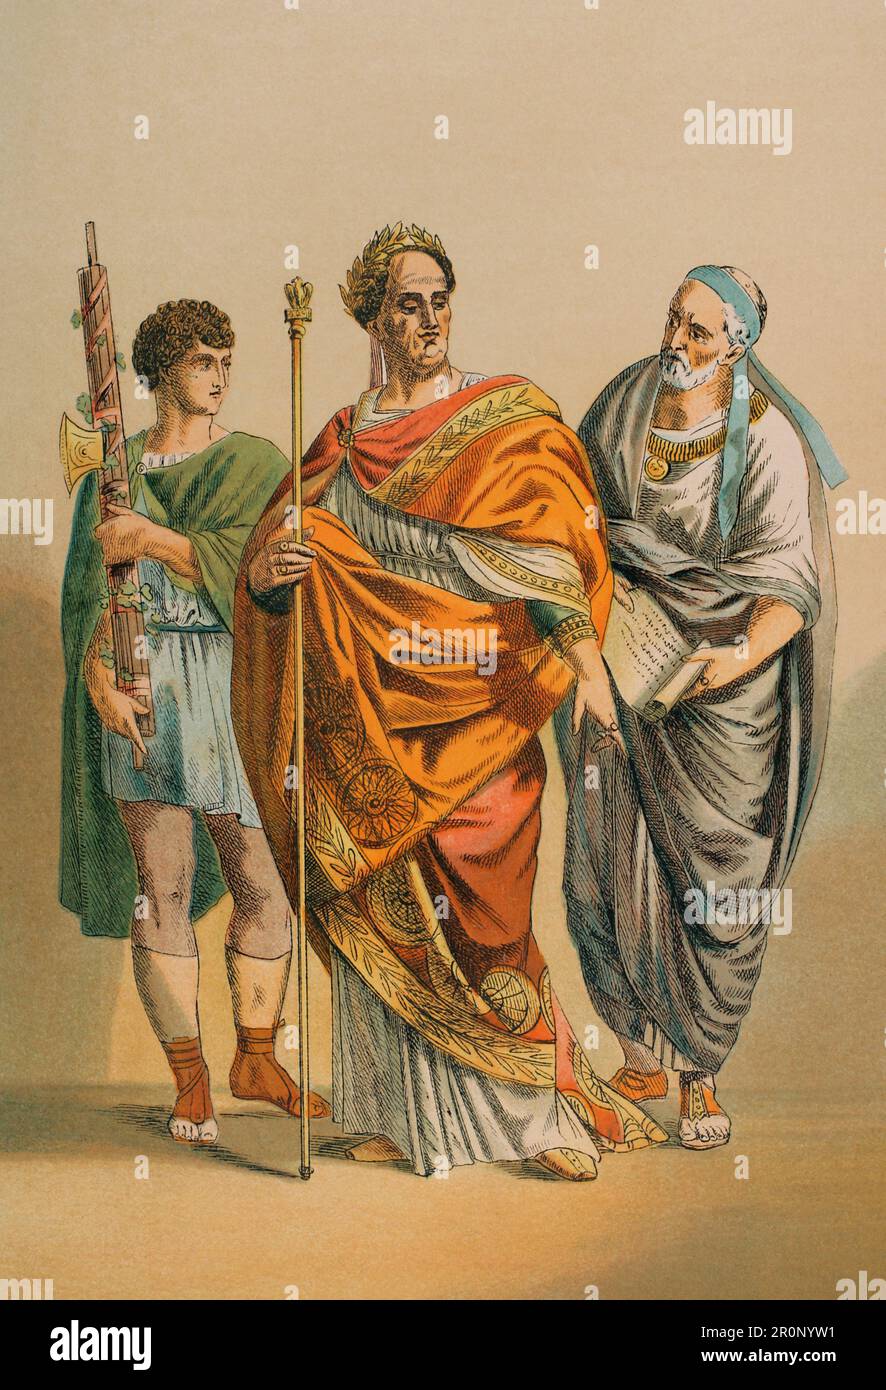 Roma antica. Flamen e i suoi assistenti. Chromolithography. 'Historia Universal' di César Cantú. Volume III, 1882. Foto Stock